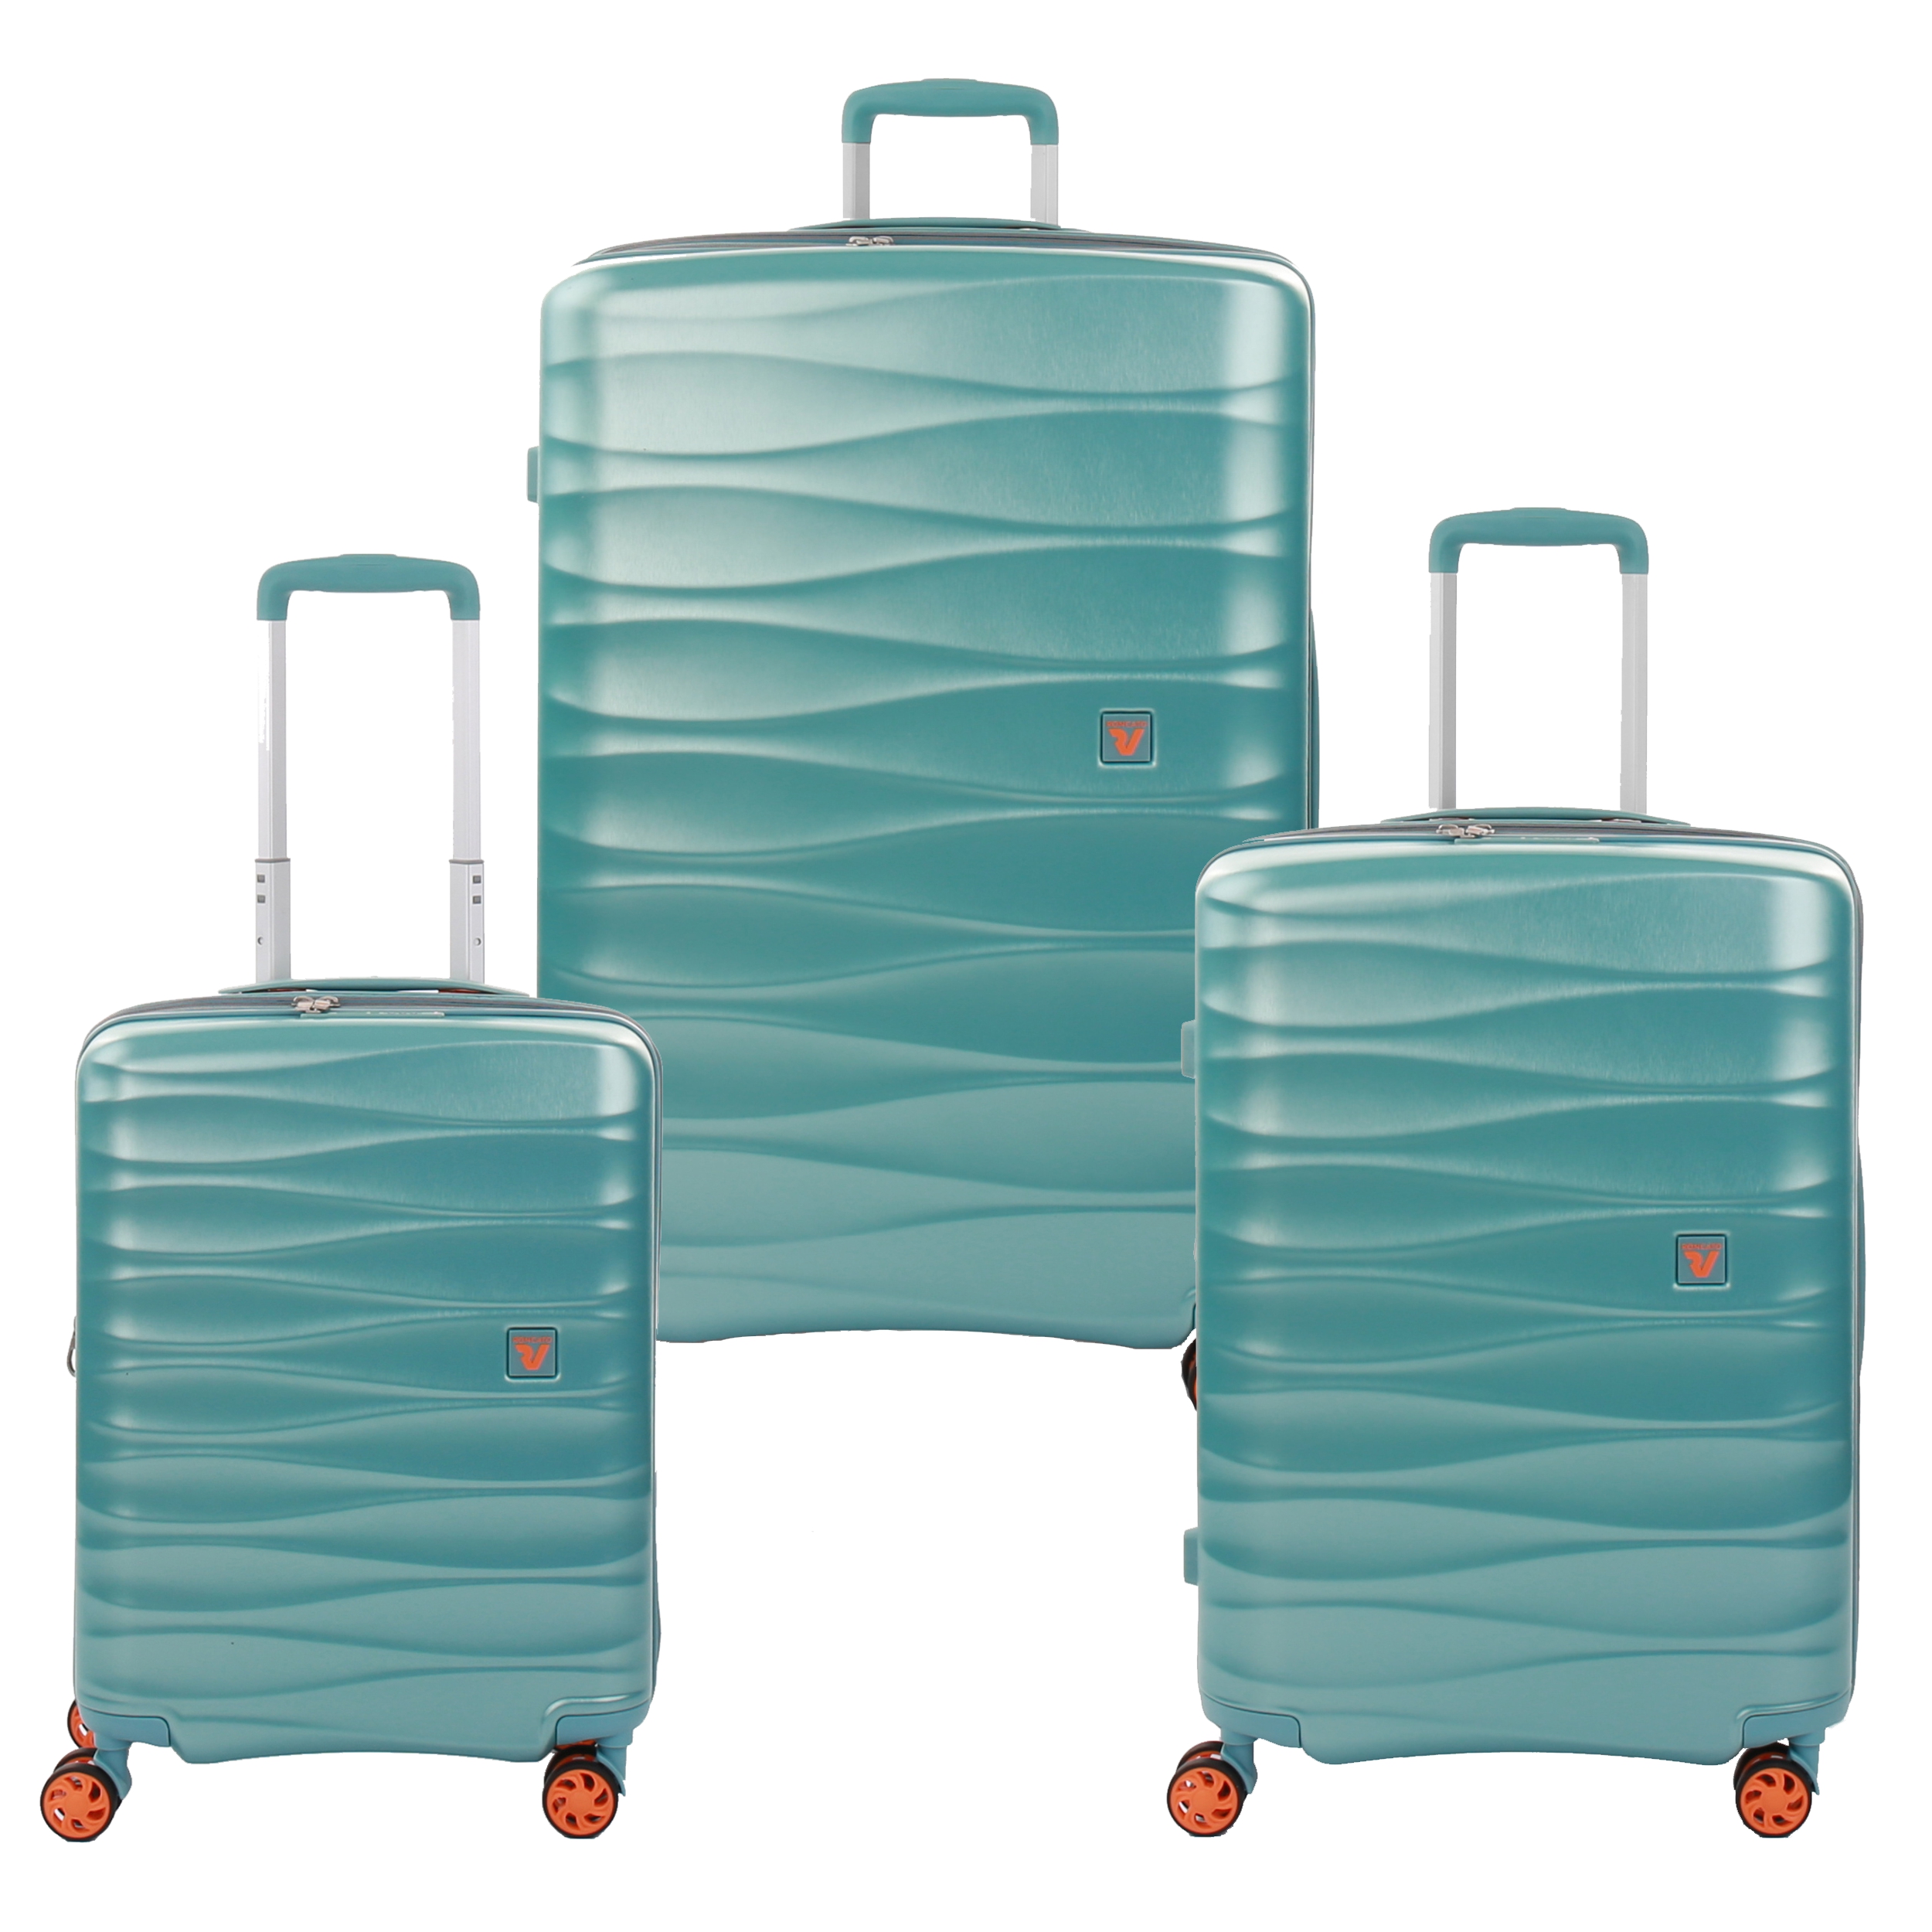 نکته خرید - قیمت روز مجموعه سه عددی چمدان رونکاتو مدل STELLAR NEW کد 414700 خرید